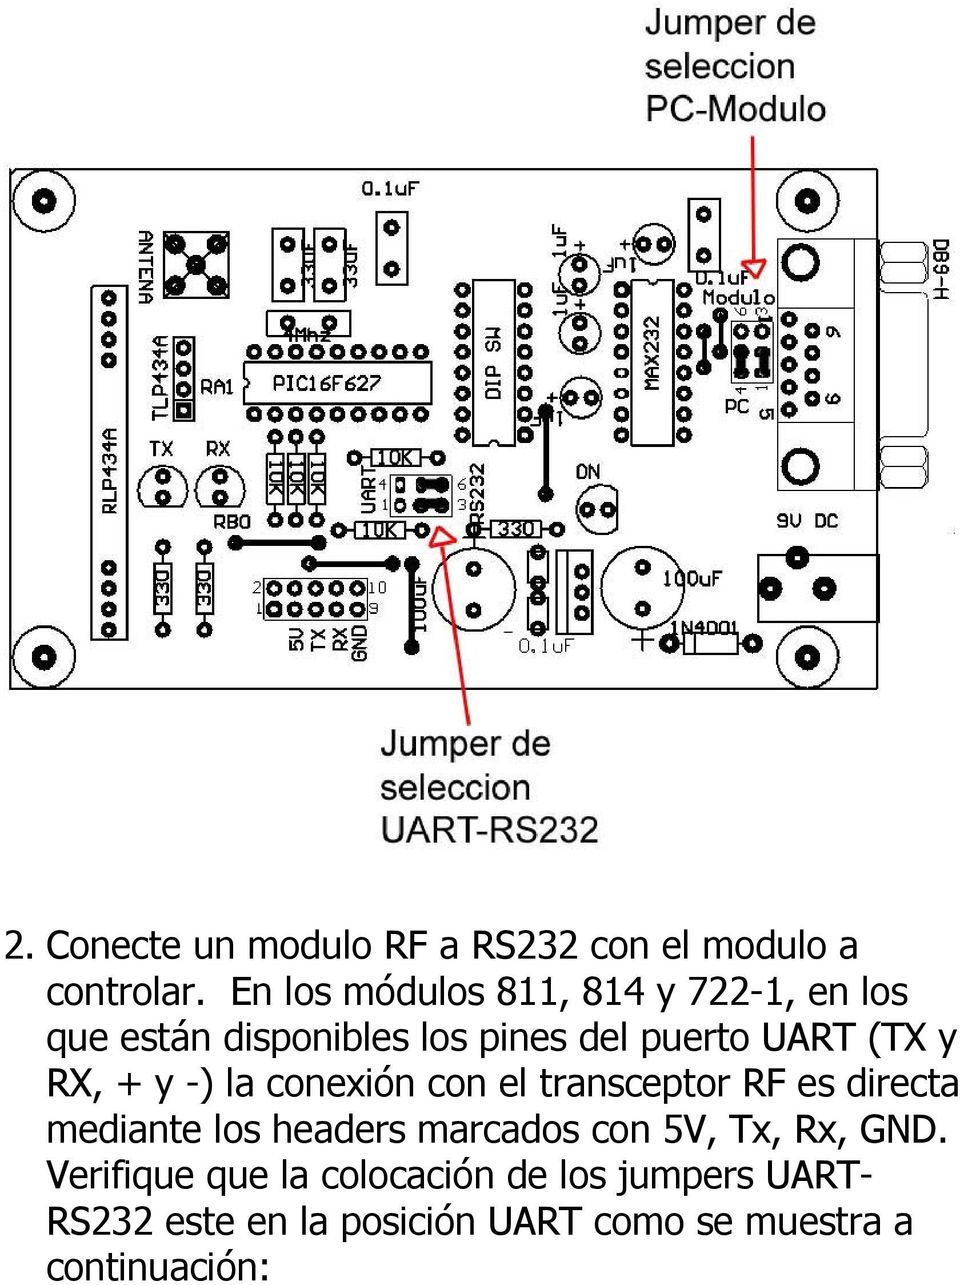 y RX, + y -) la conexión con el transceptor RF es directa mediante los headers marcados con